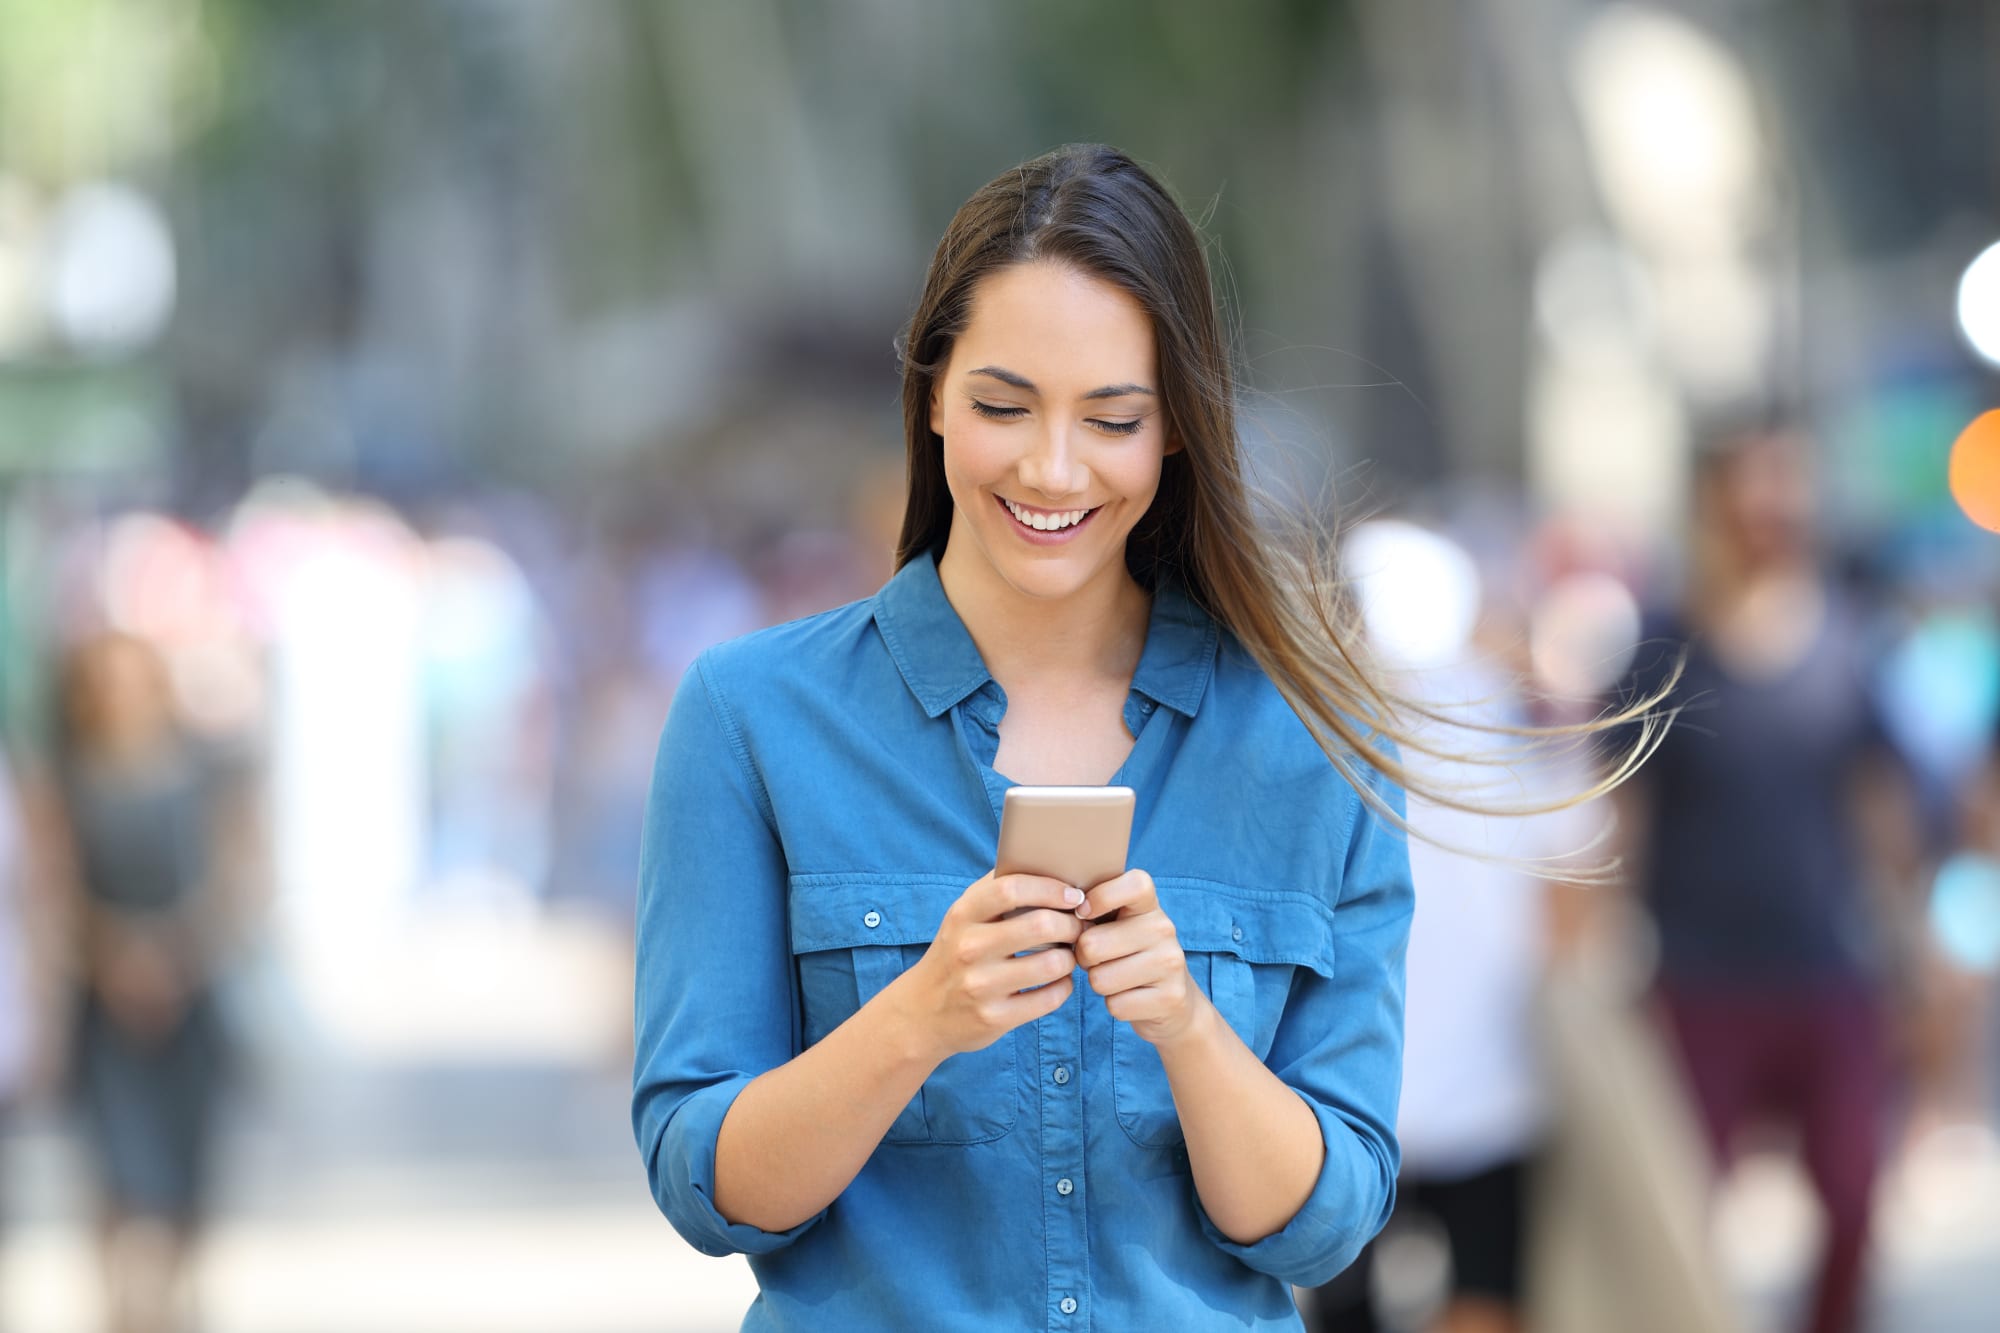 Eine Frau auf einer belebten Straße schaut lächelnd auf ihr Smartphone